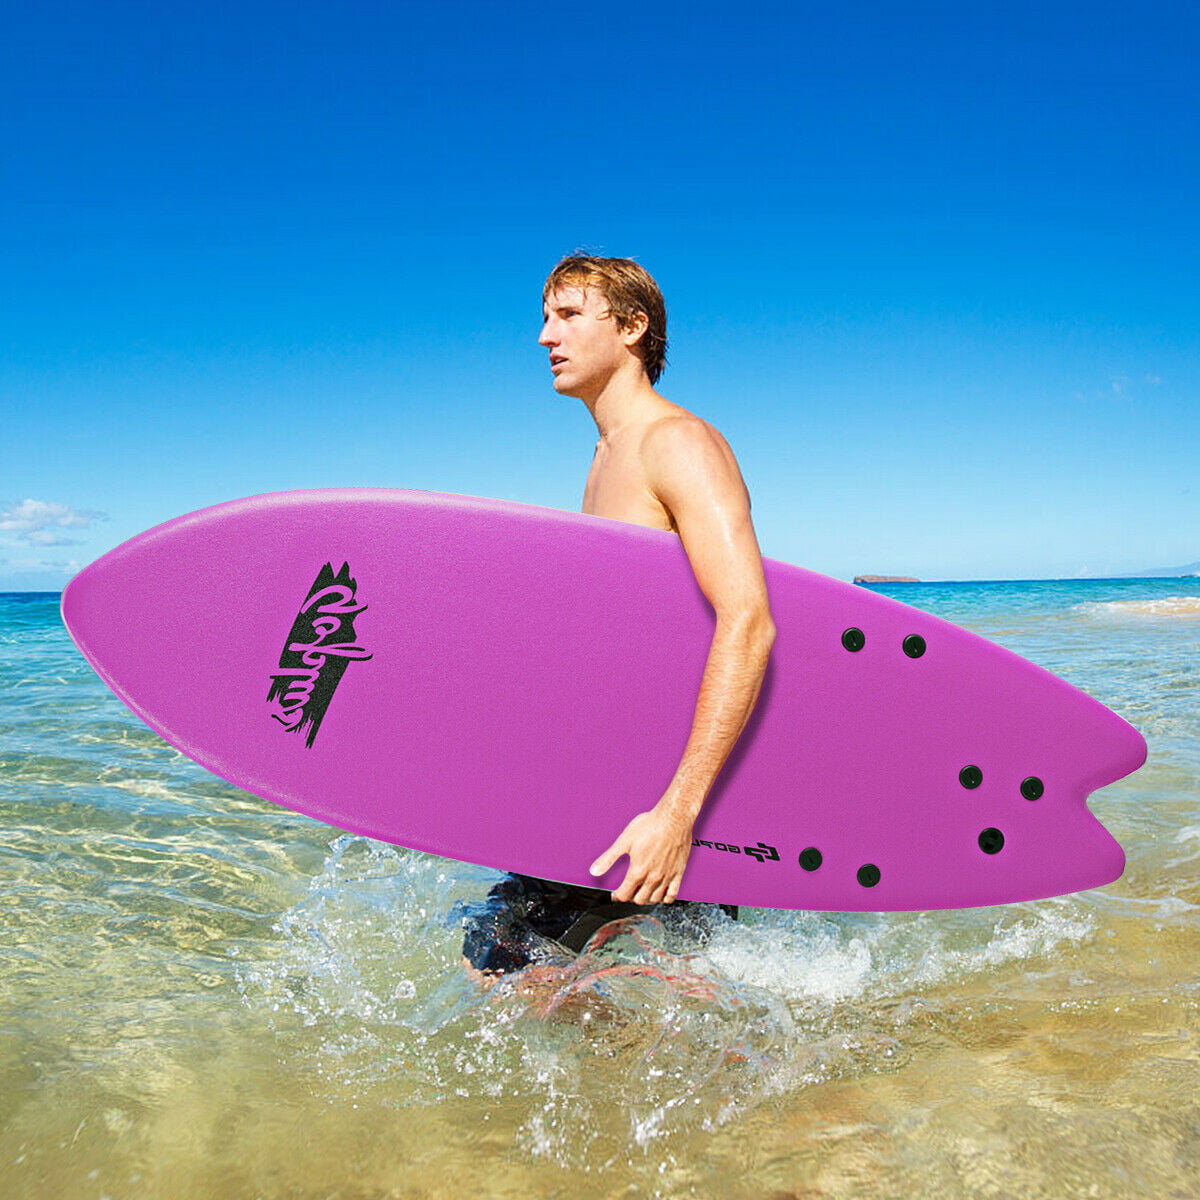 5'5" Surf Board Surfing Beach Ocean Foamie Board w/Wrist Rope & 3 Fins Pink 